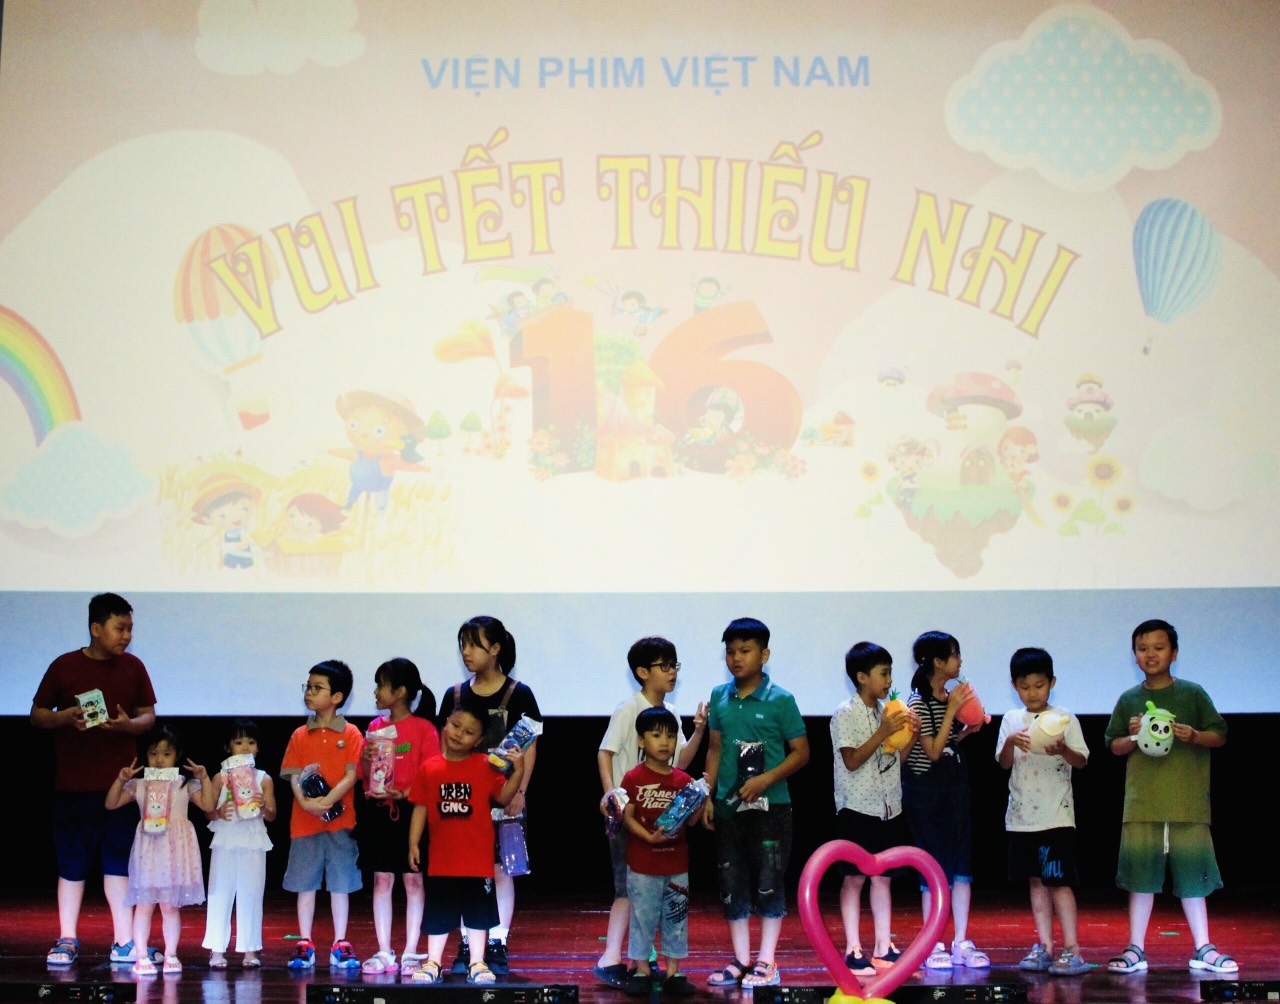 Chương trình chiếu phim về đề tài Chiến tranh Việt Nam tại Hà Nội